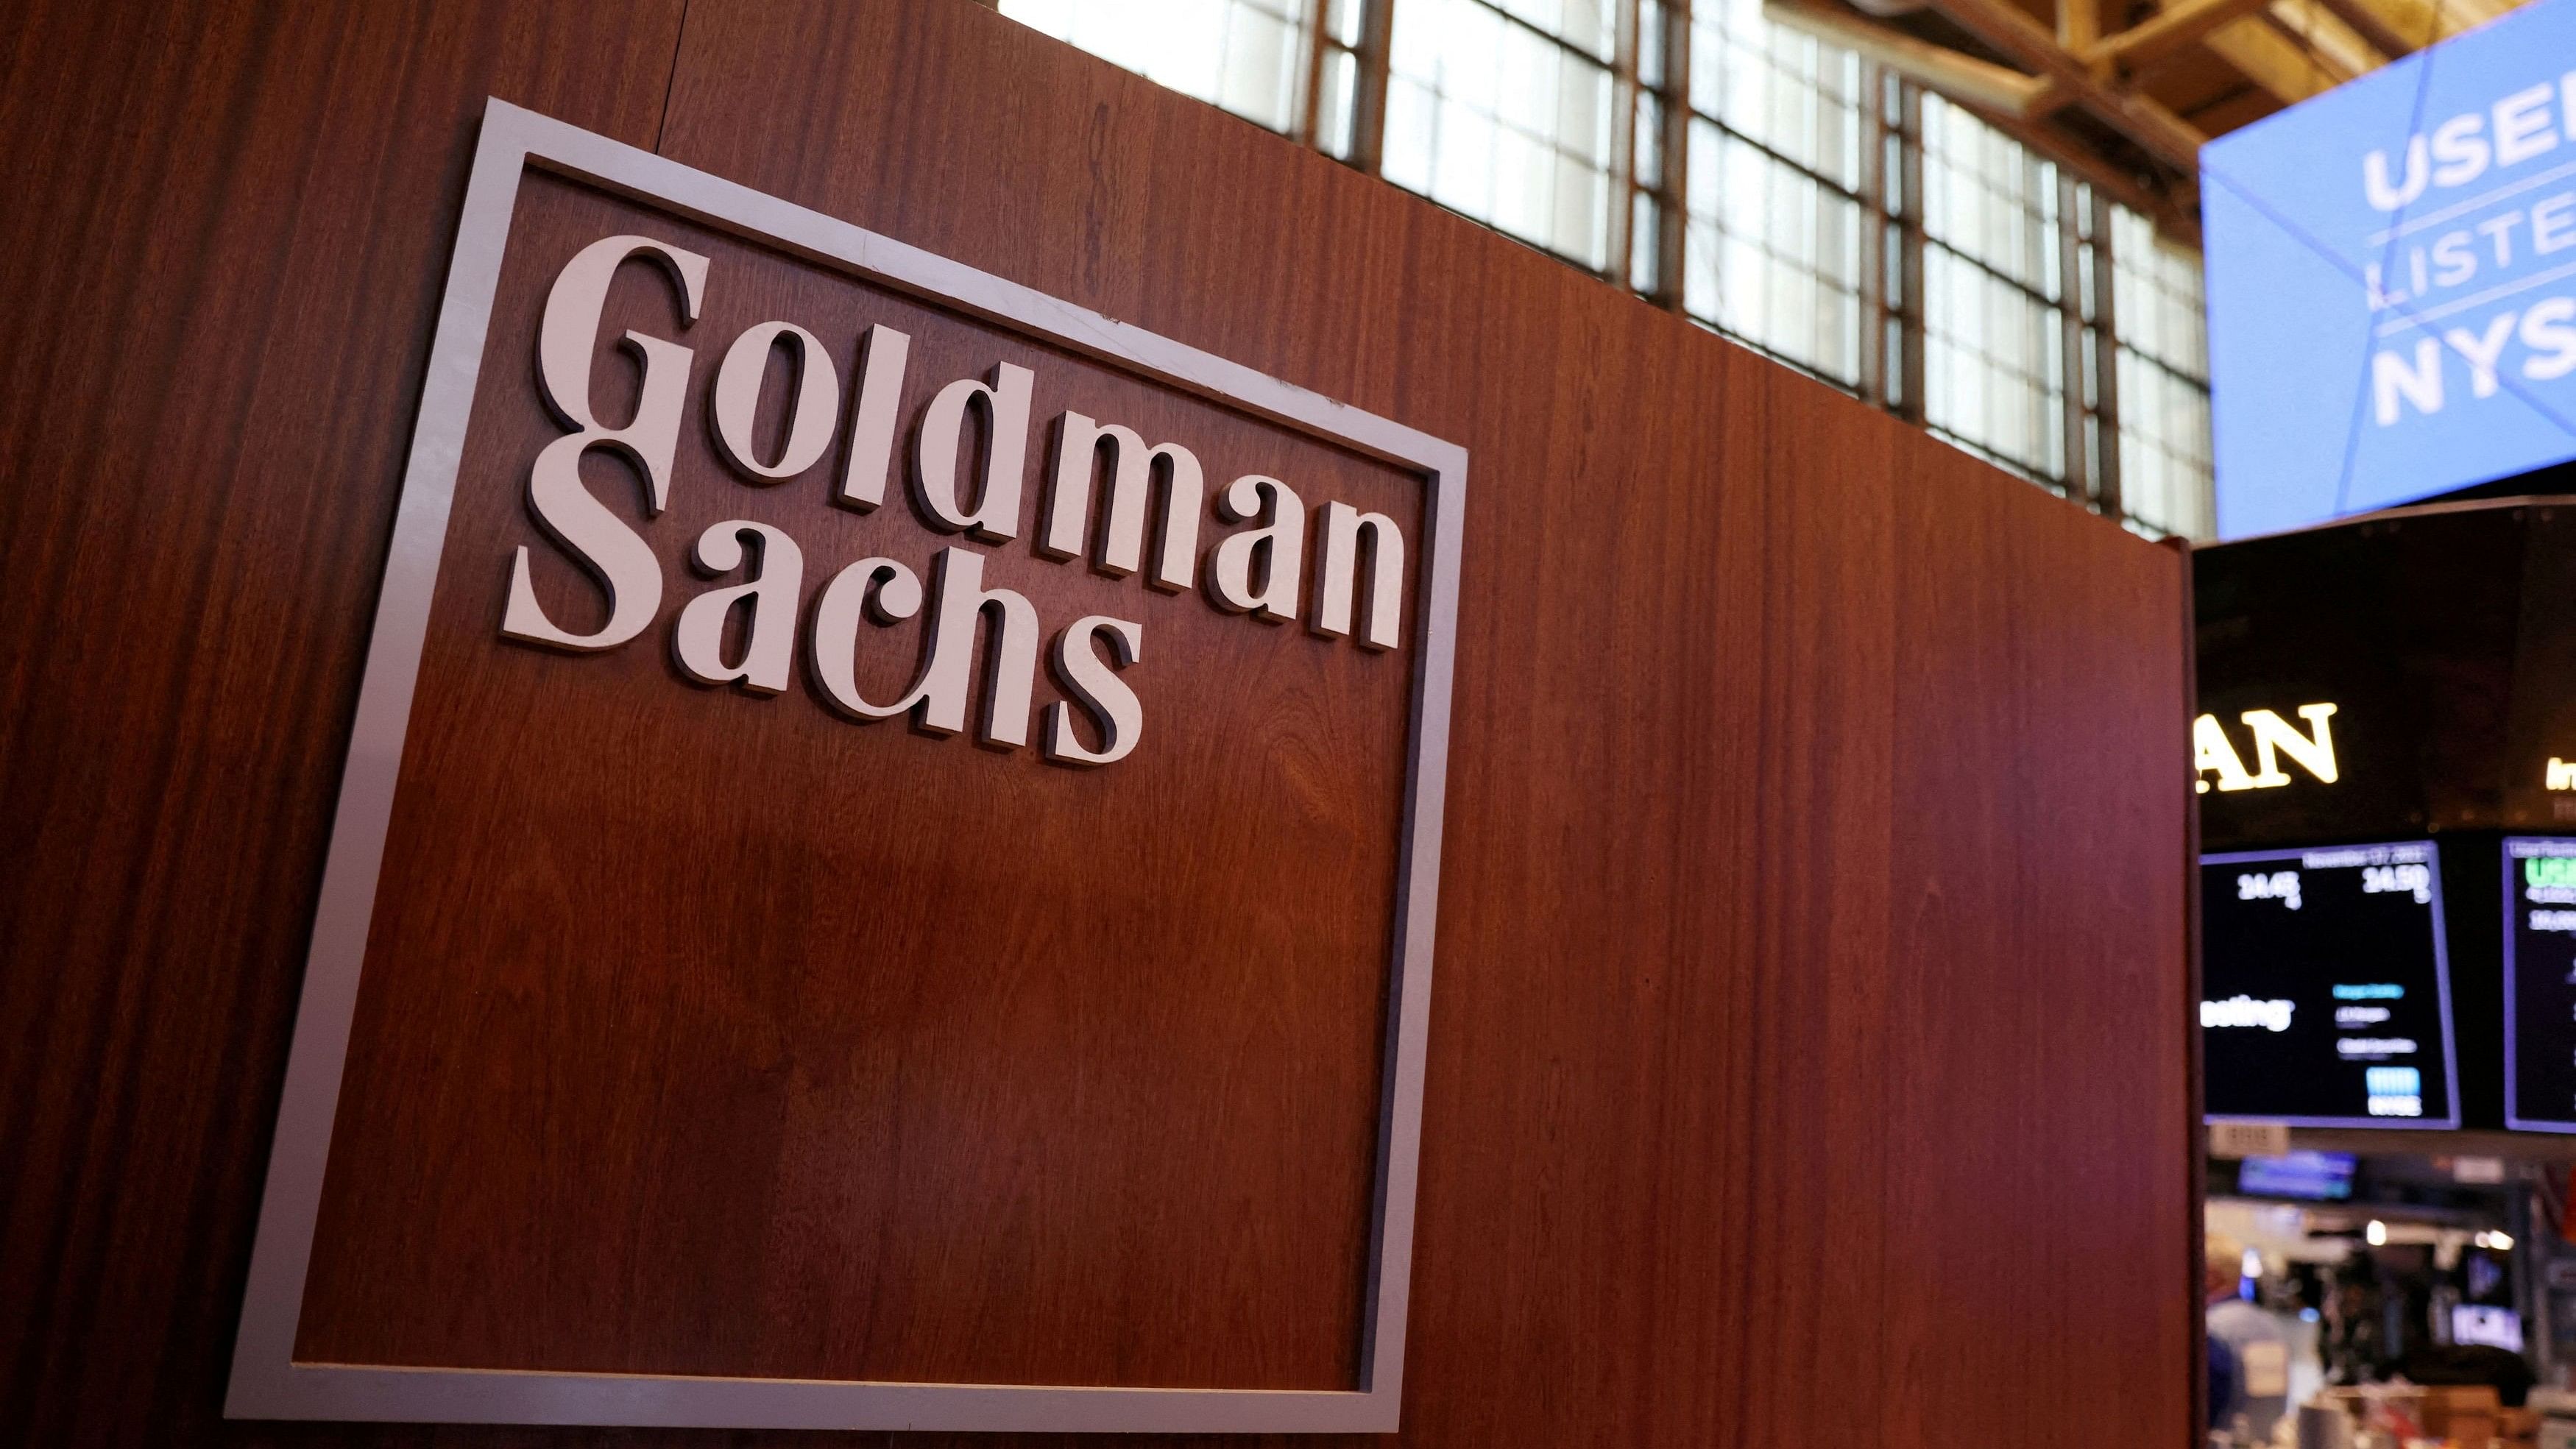 <div class="paragraphs"><p>The logo for Goldman Sachs.&nbsp;</p></div>